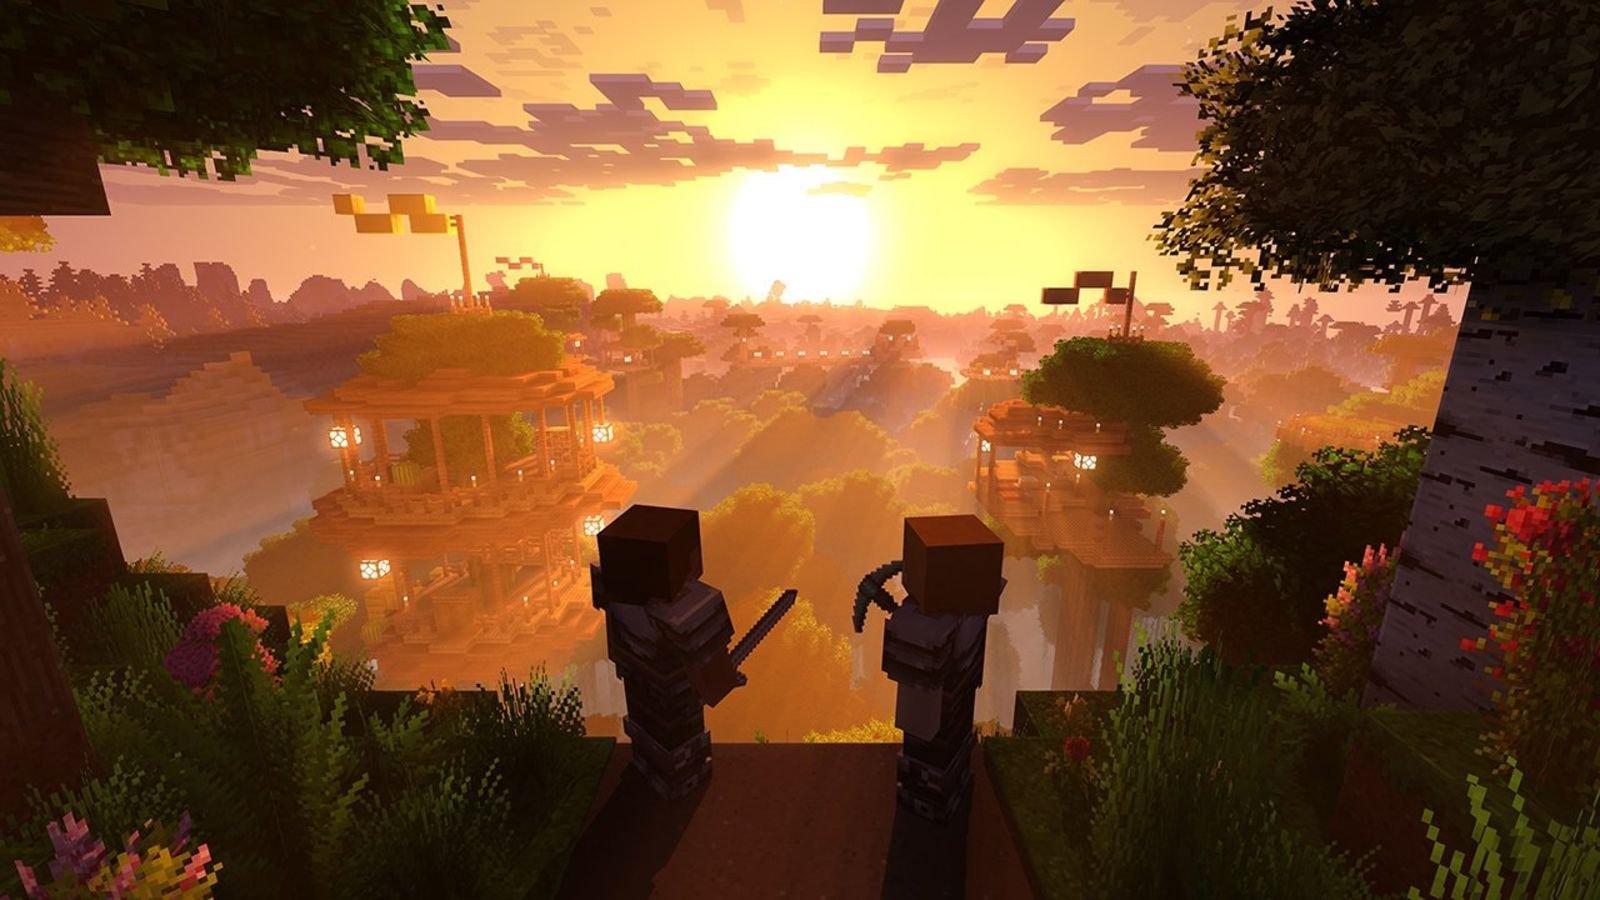 Minecraft terá gráficos em 4K e multiplayer entre várias plataformas